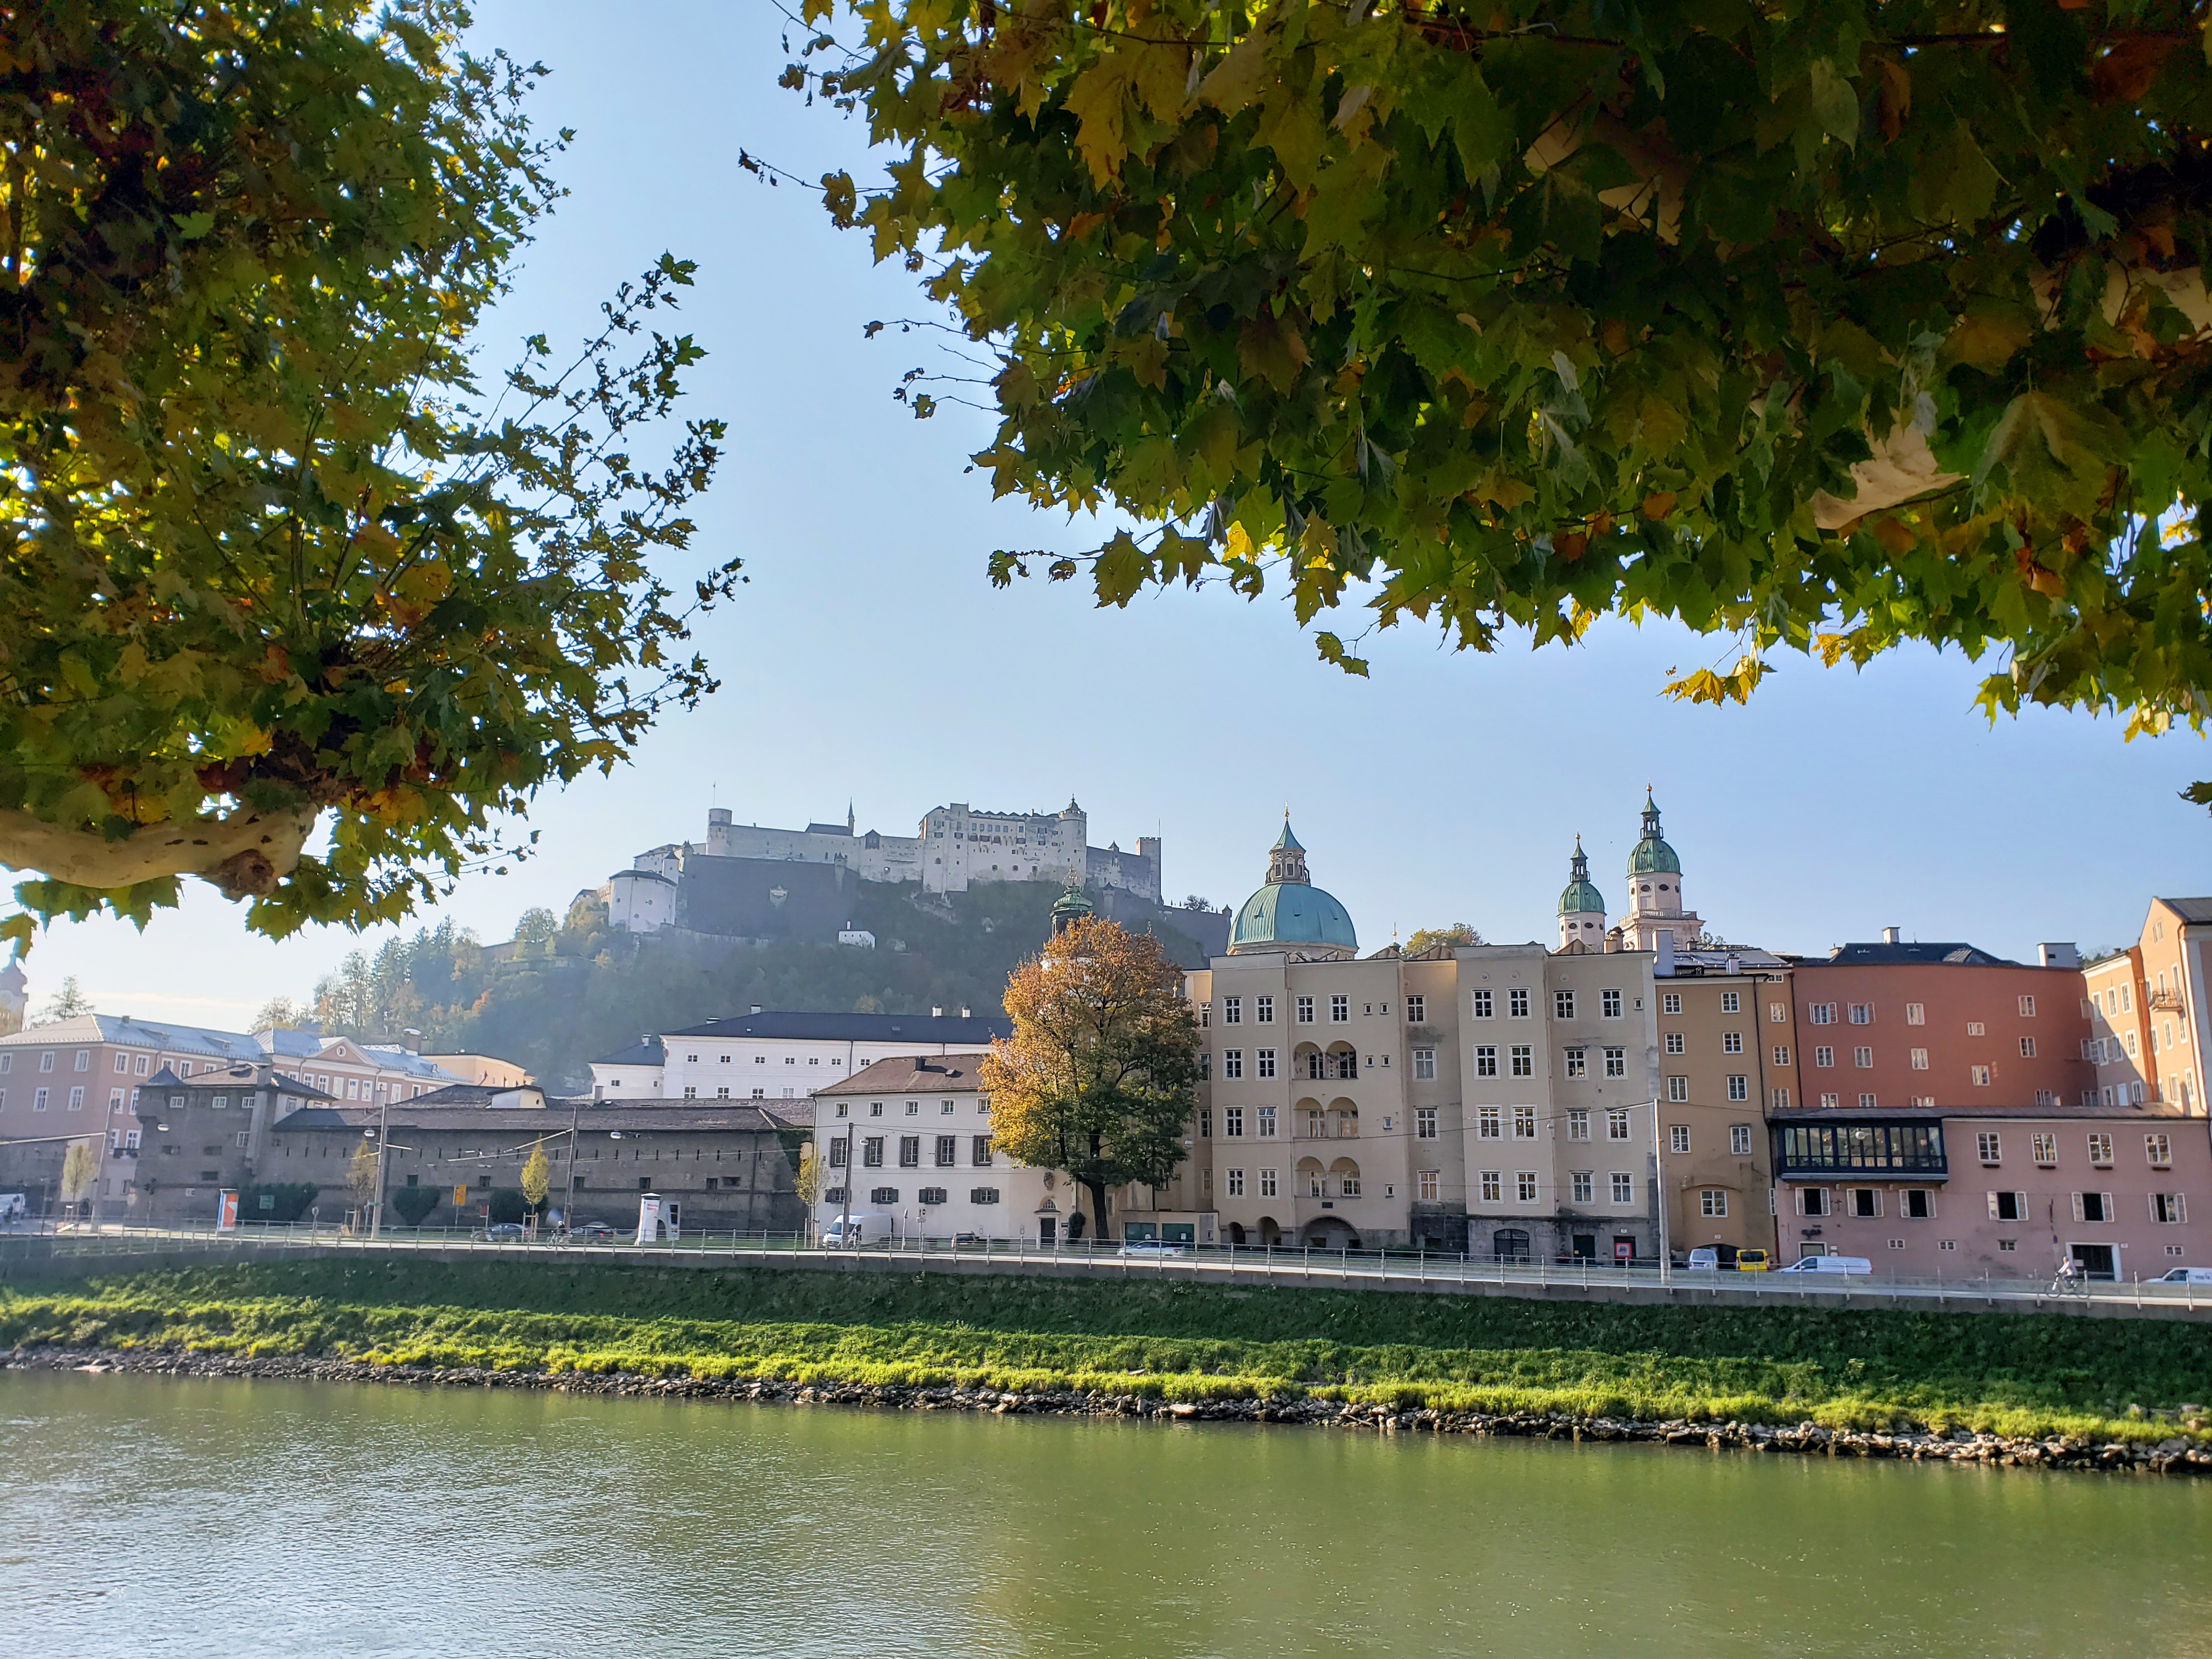 How_To_Spend_2_Days_in_Salzburg_Austria